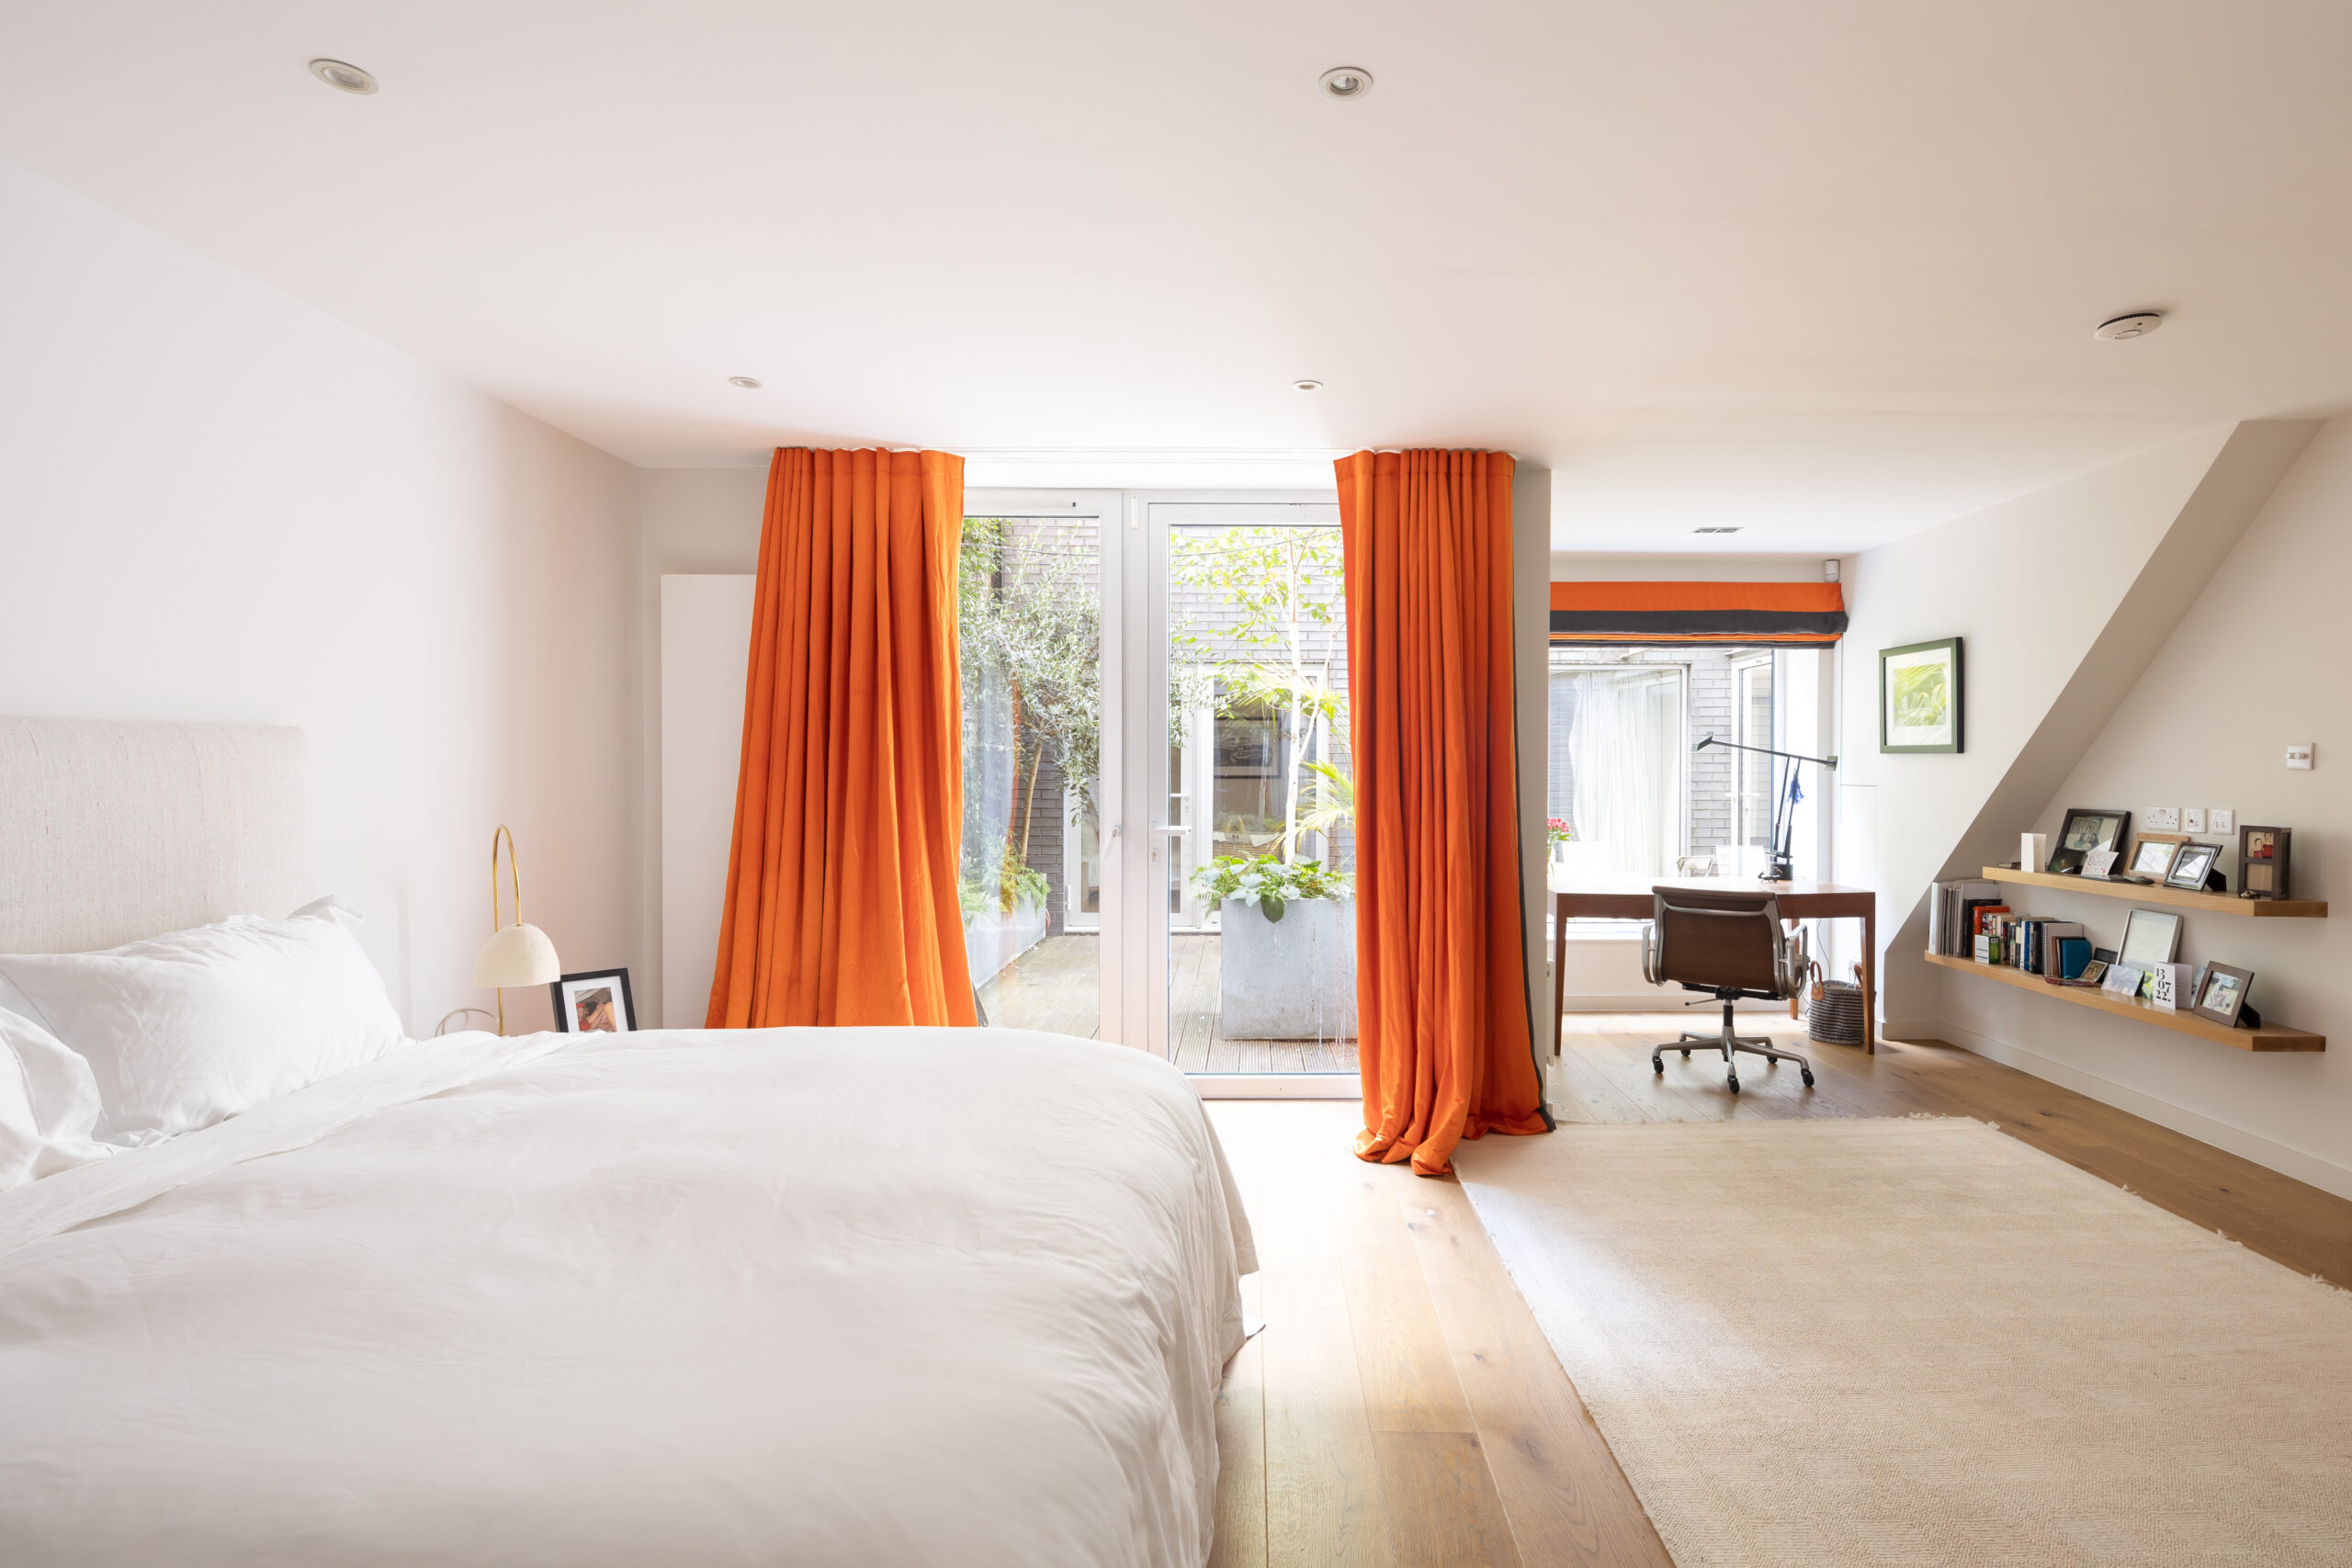 For Sale: Wornington Road North Kensington W10 luxury minimalist master bedroom